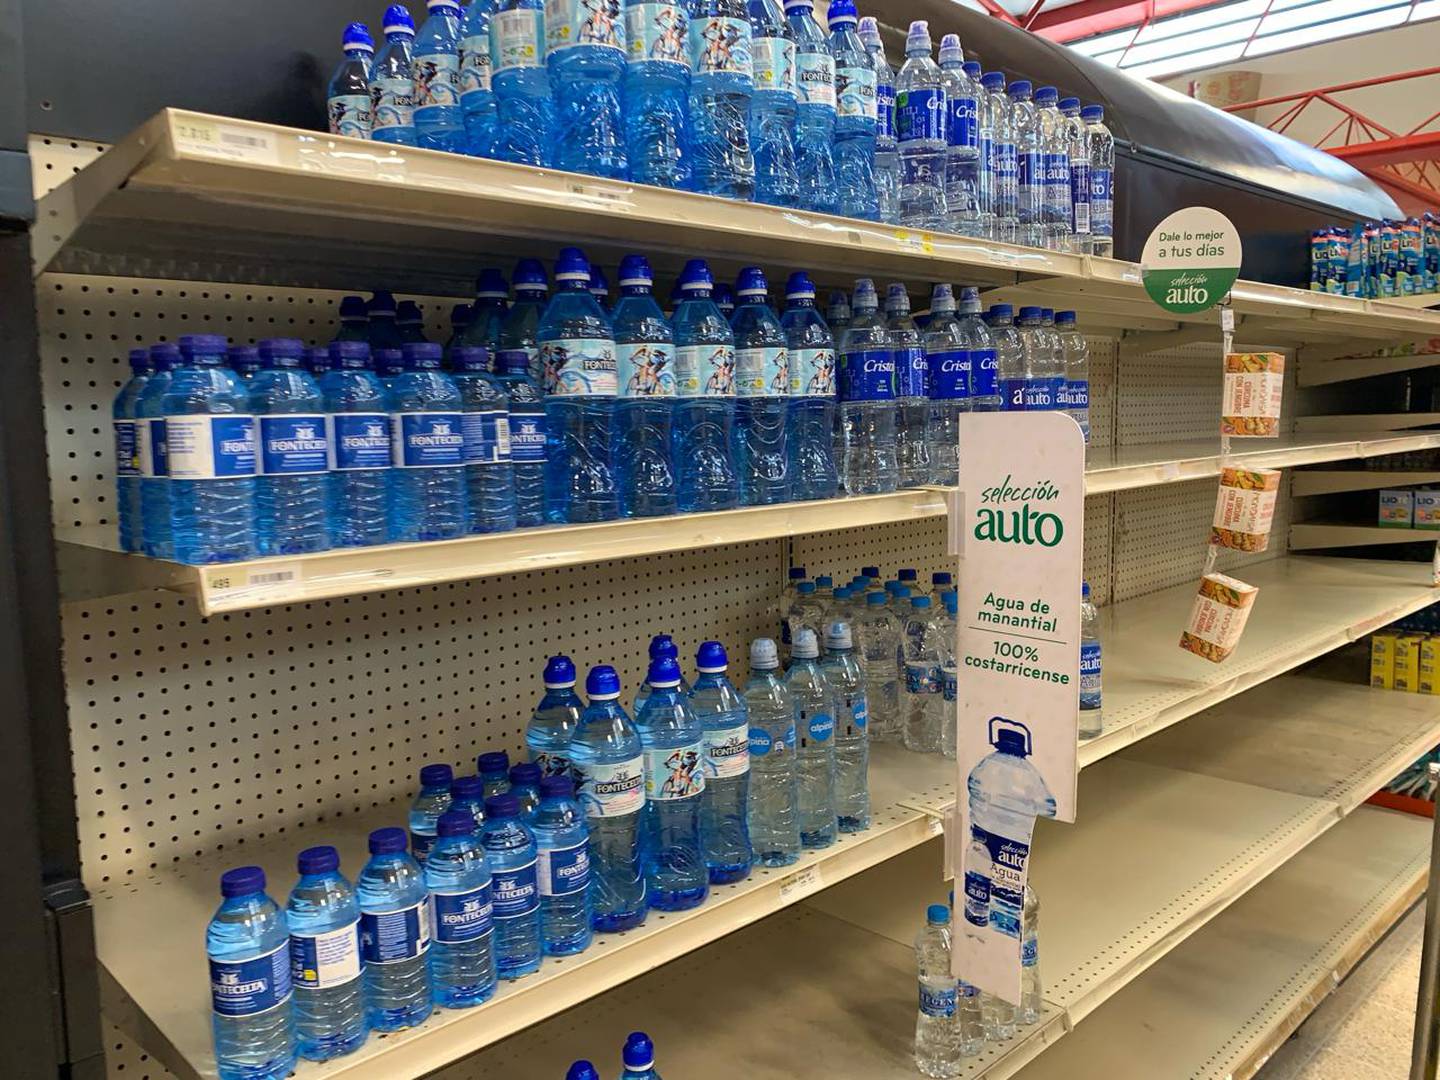 Automercado de Moravia casi sin agua por demanda ante contaminación del liquido reportada por vecinos de Tibás, Moravia y Goicoechea.